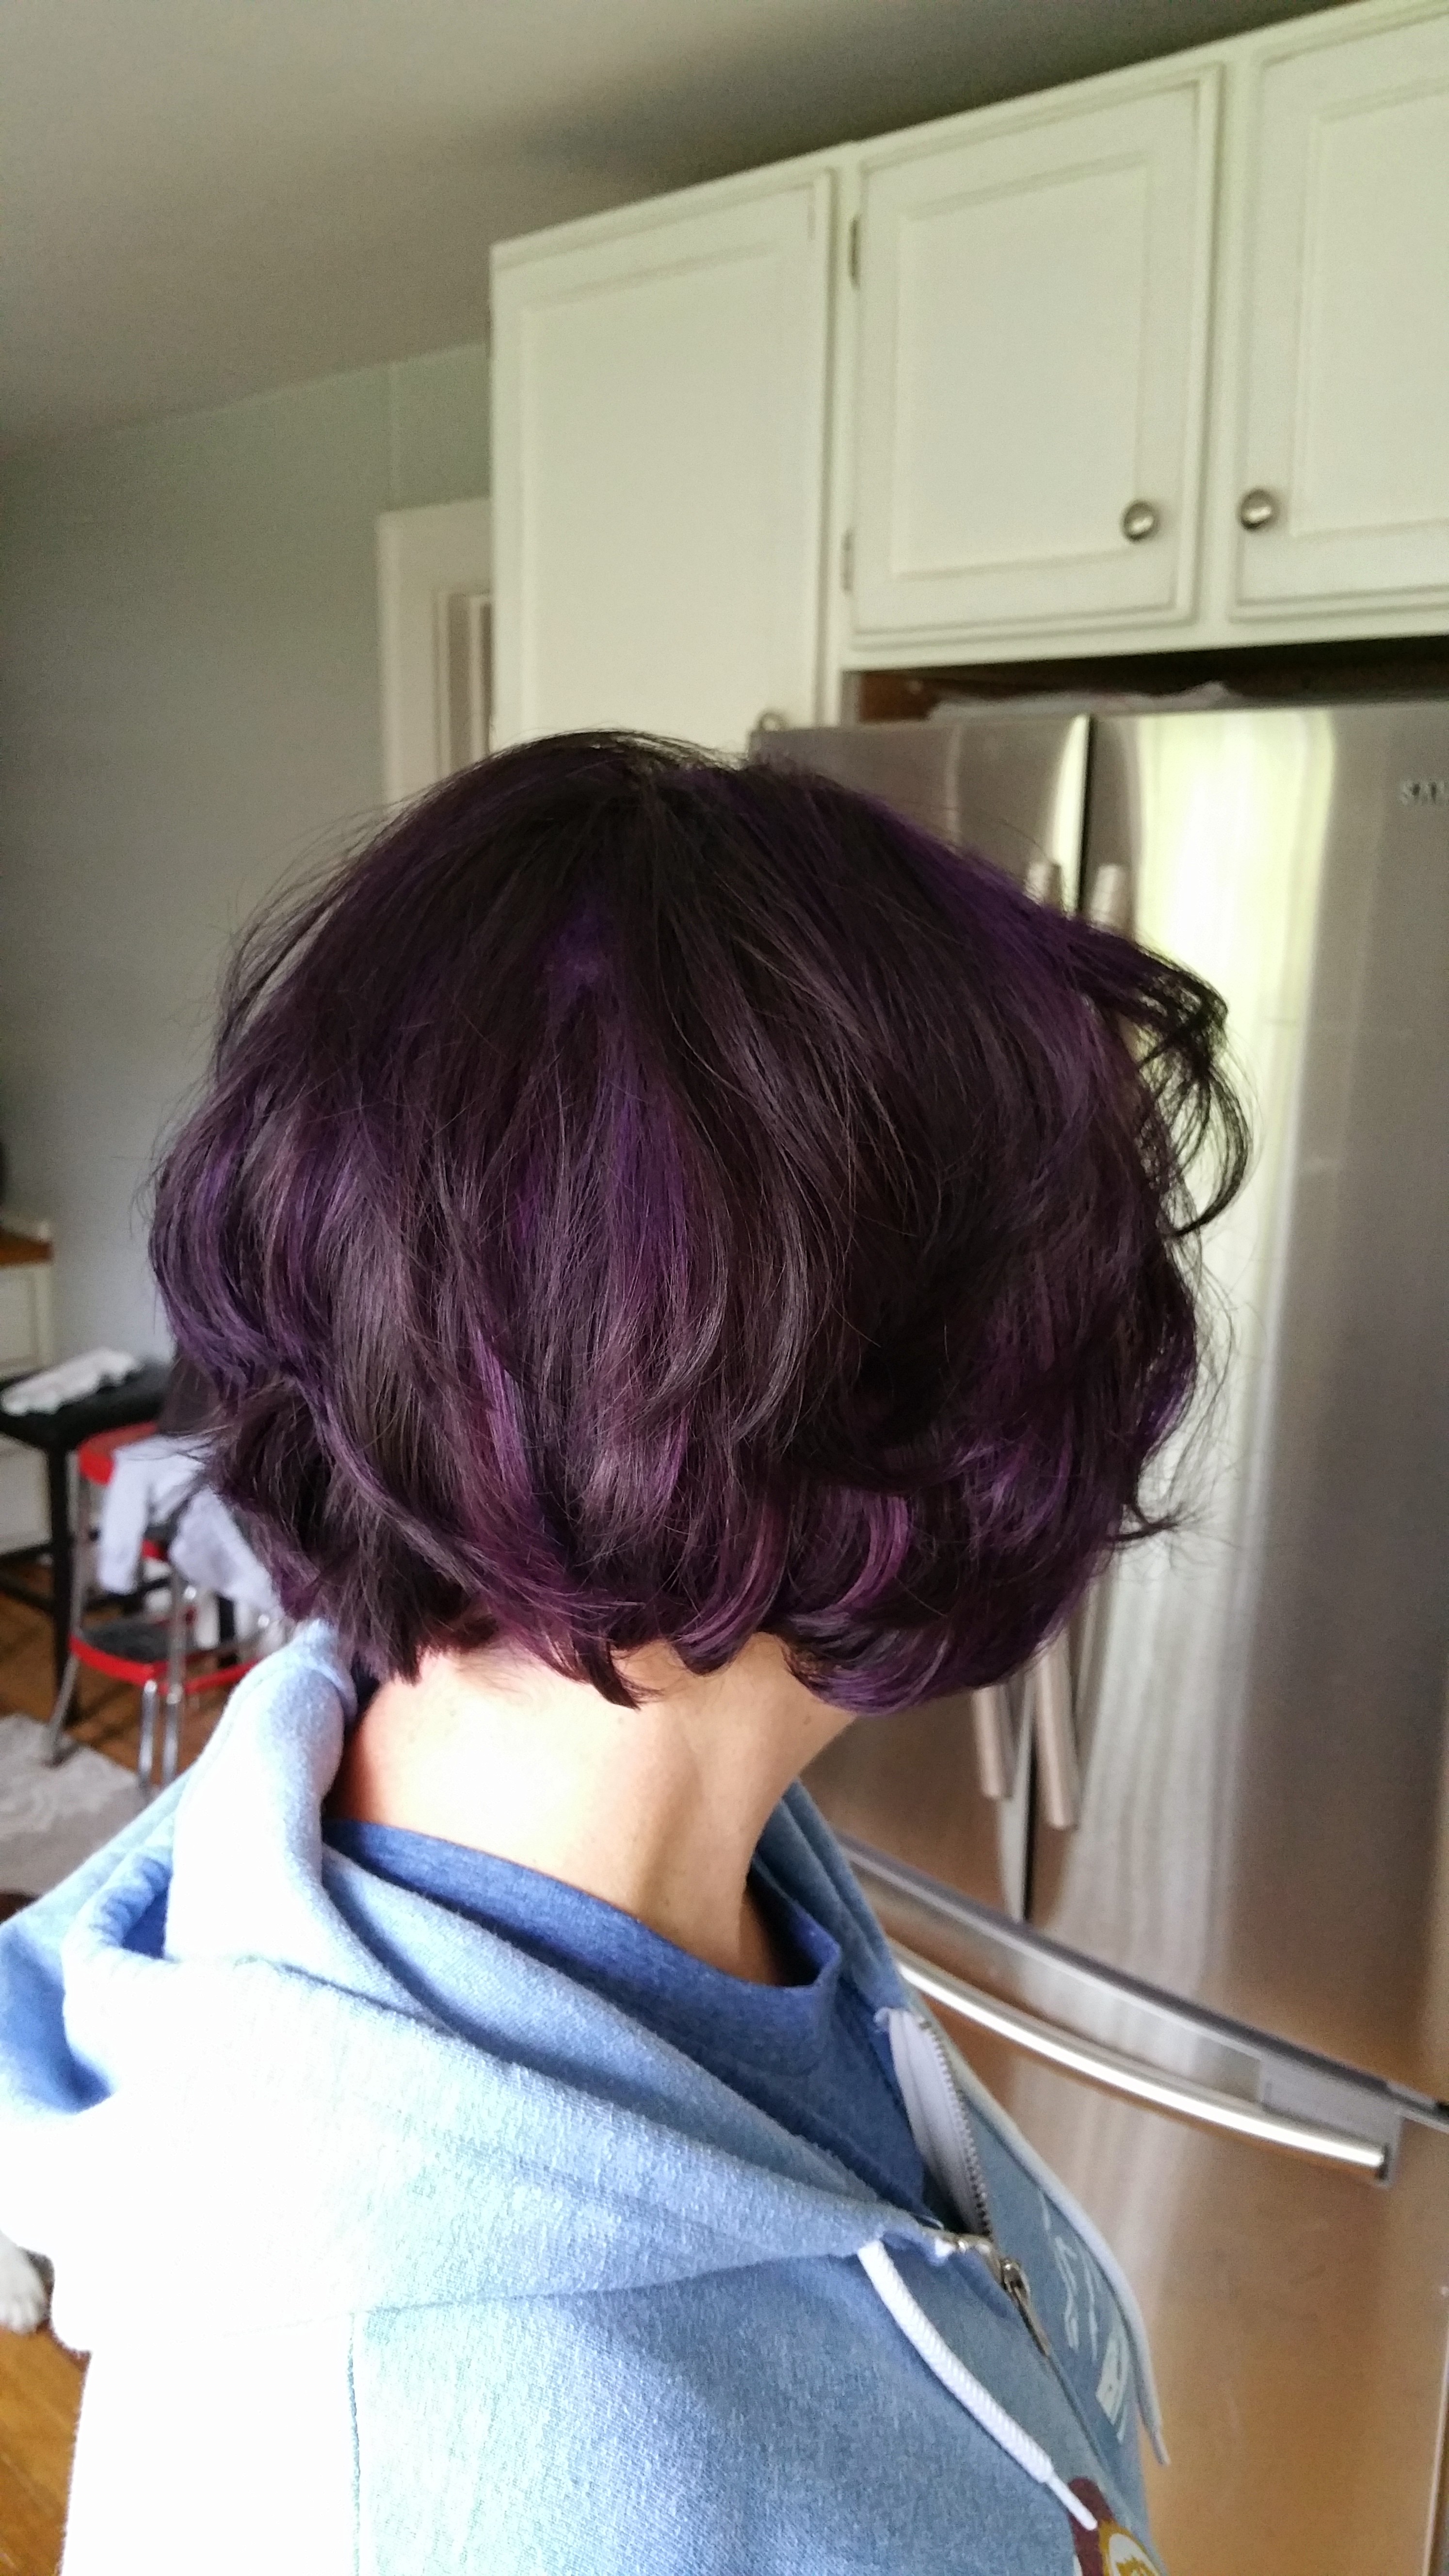 Short purple hair